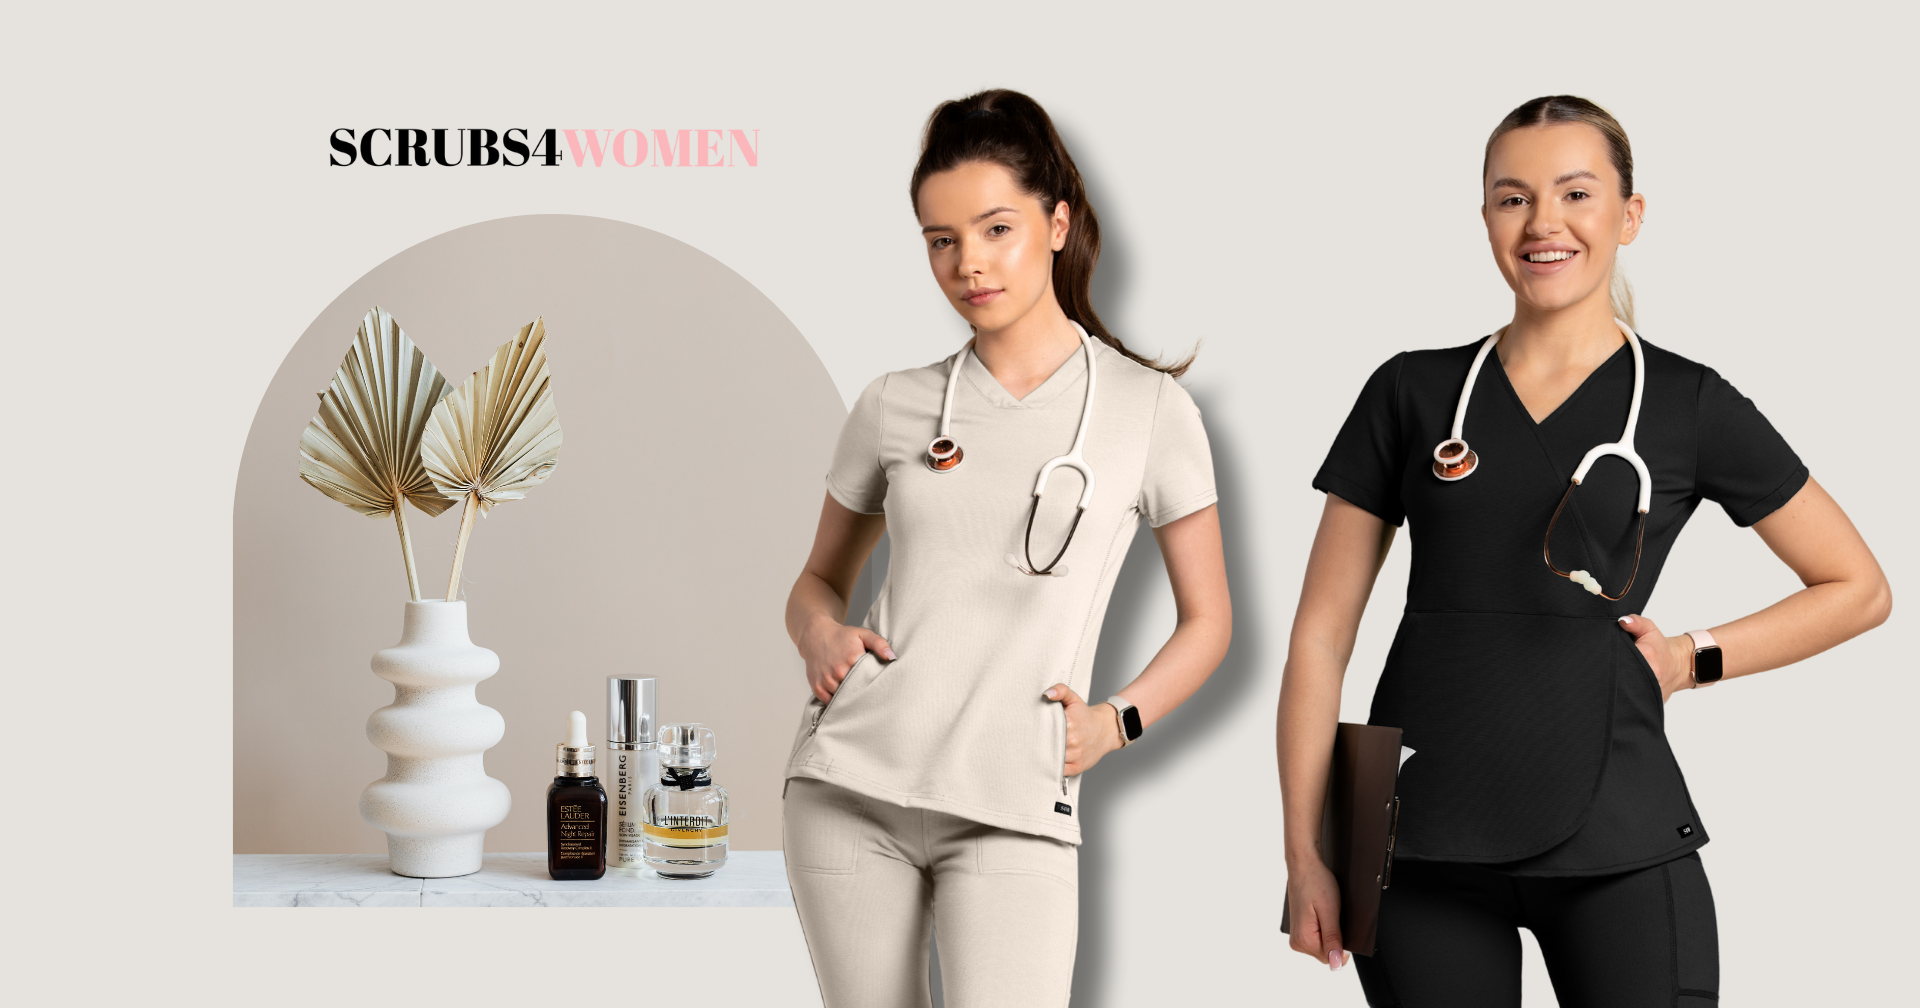 Jaką odzież medyczną wybierają profesjonalistki w branży beauty?